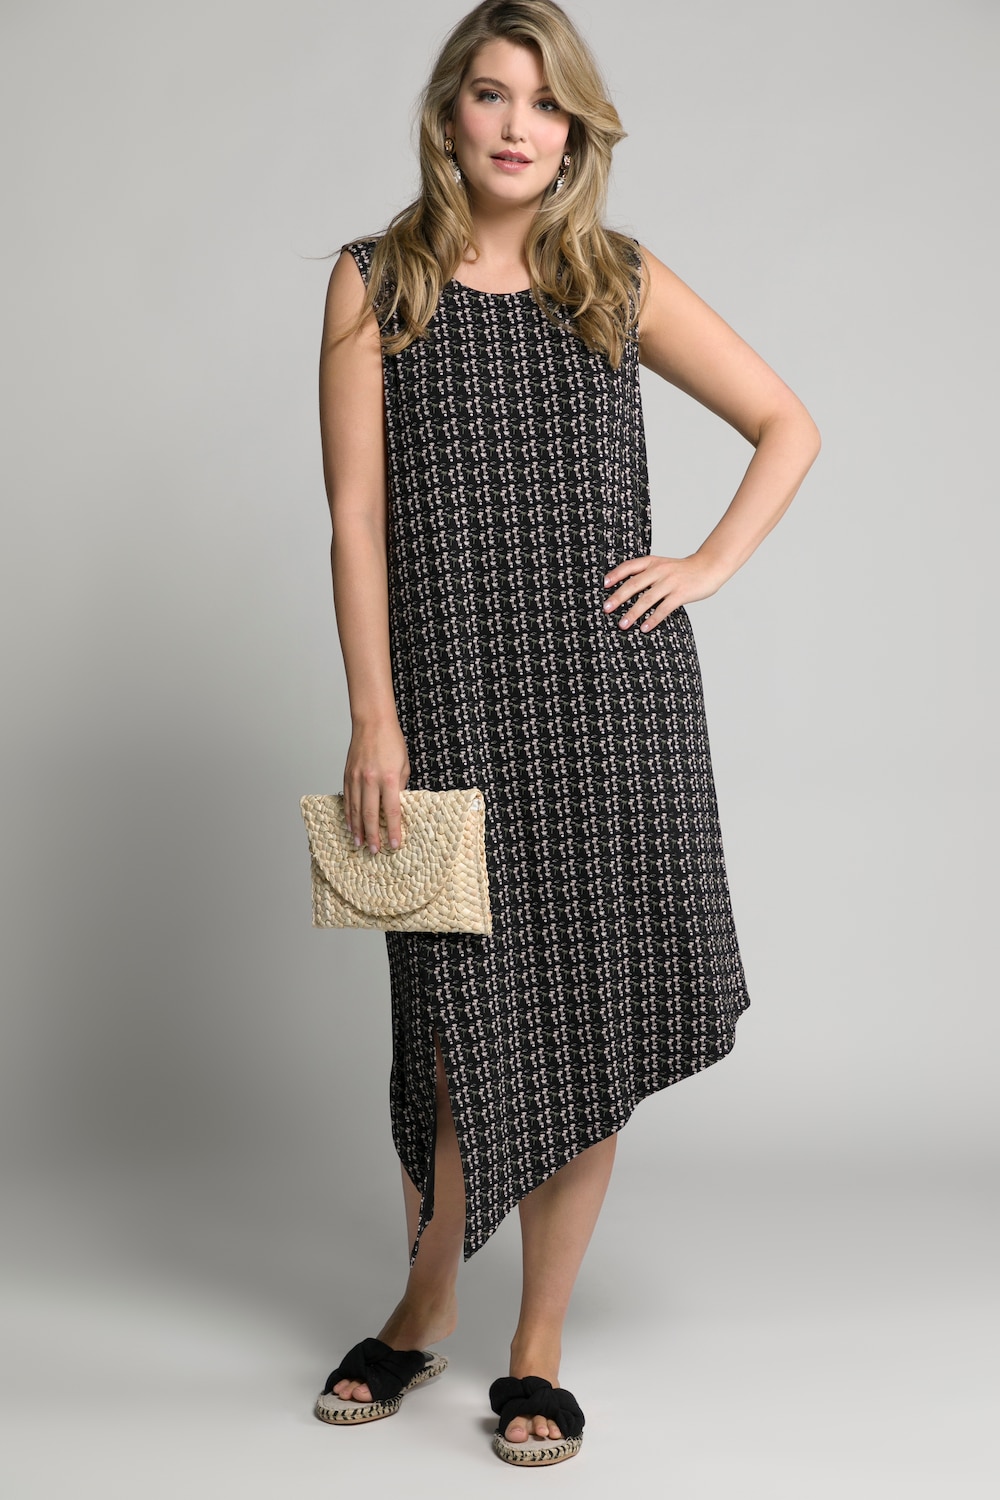 Plus Size Mini Palm Print Asymmetric Hem Stretch Knit Tank Dress, Woman, black, size: 16/18, viscose, Ulla Popken